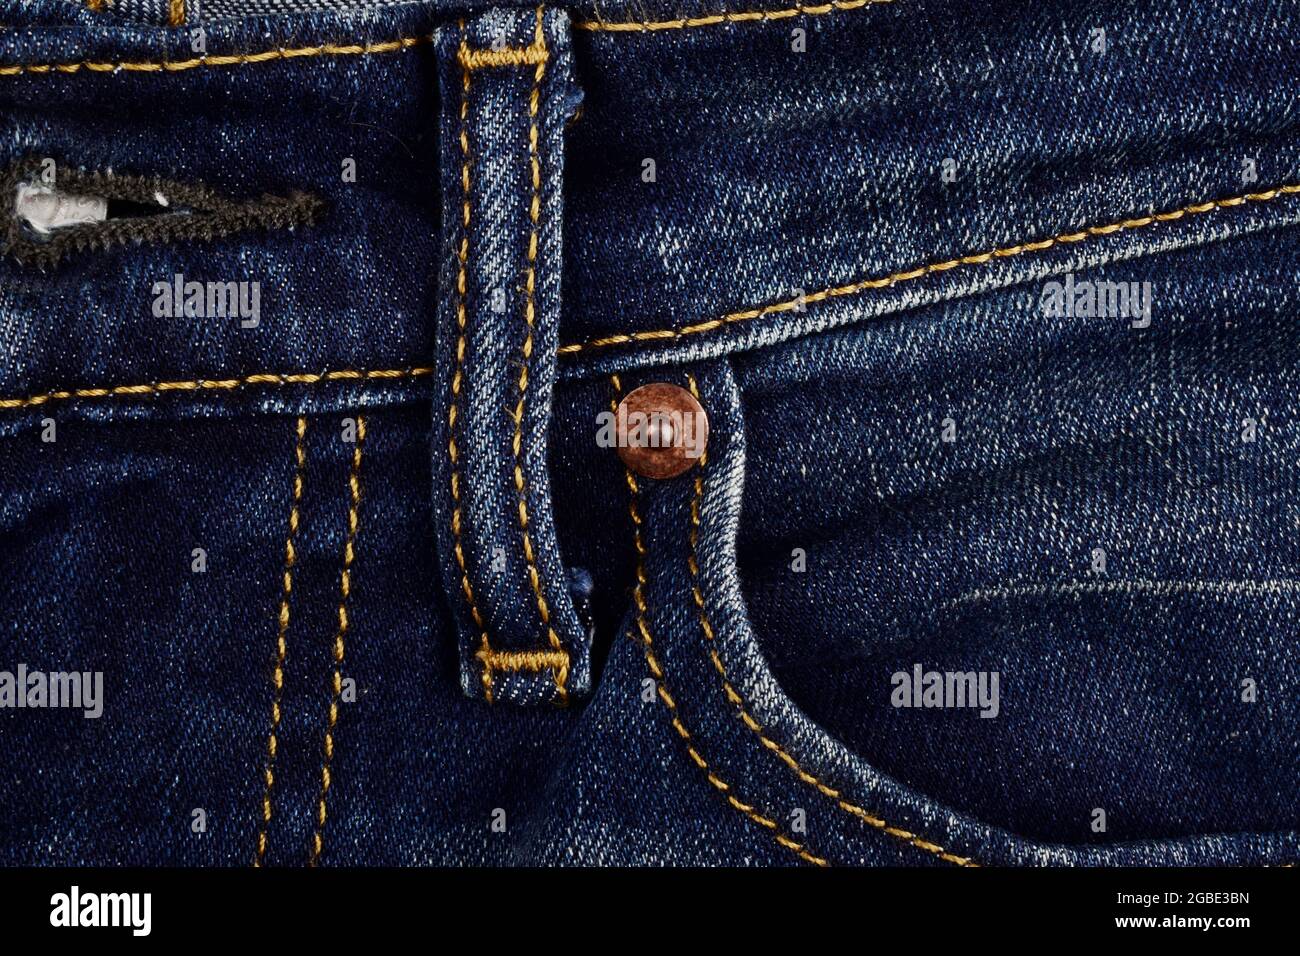 Imici con filettatura gialla su jeans Denim Foto Stock